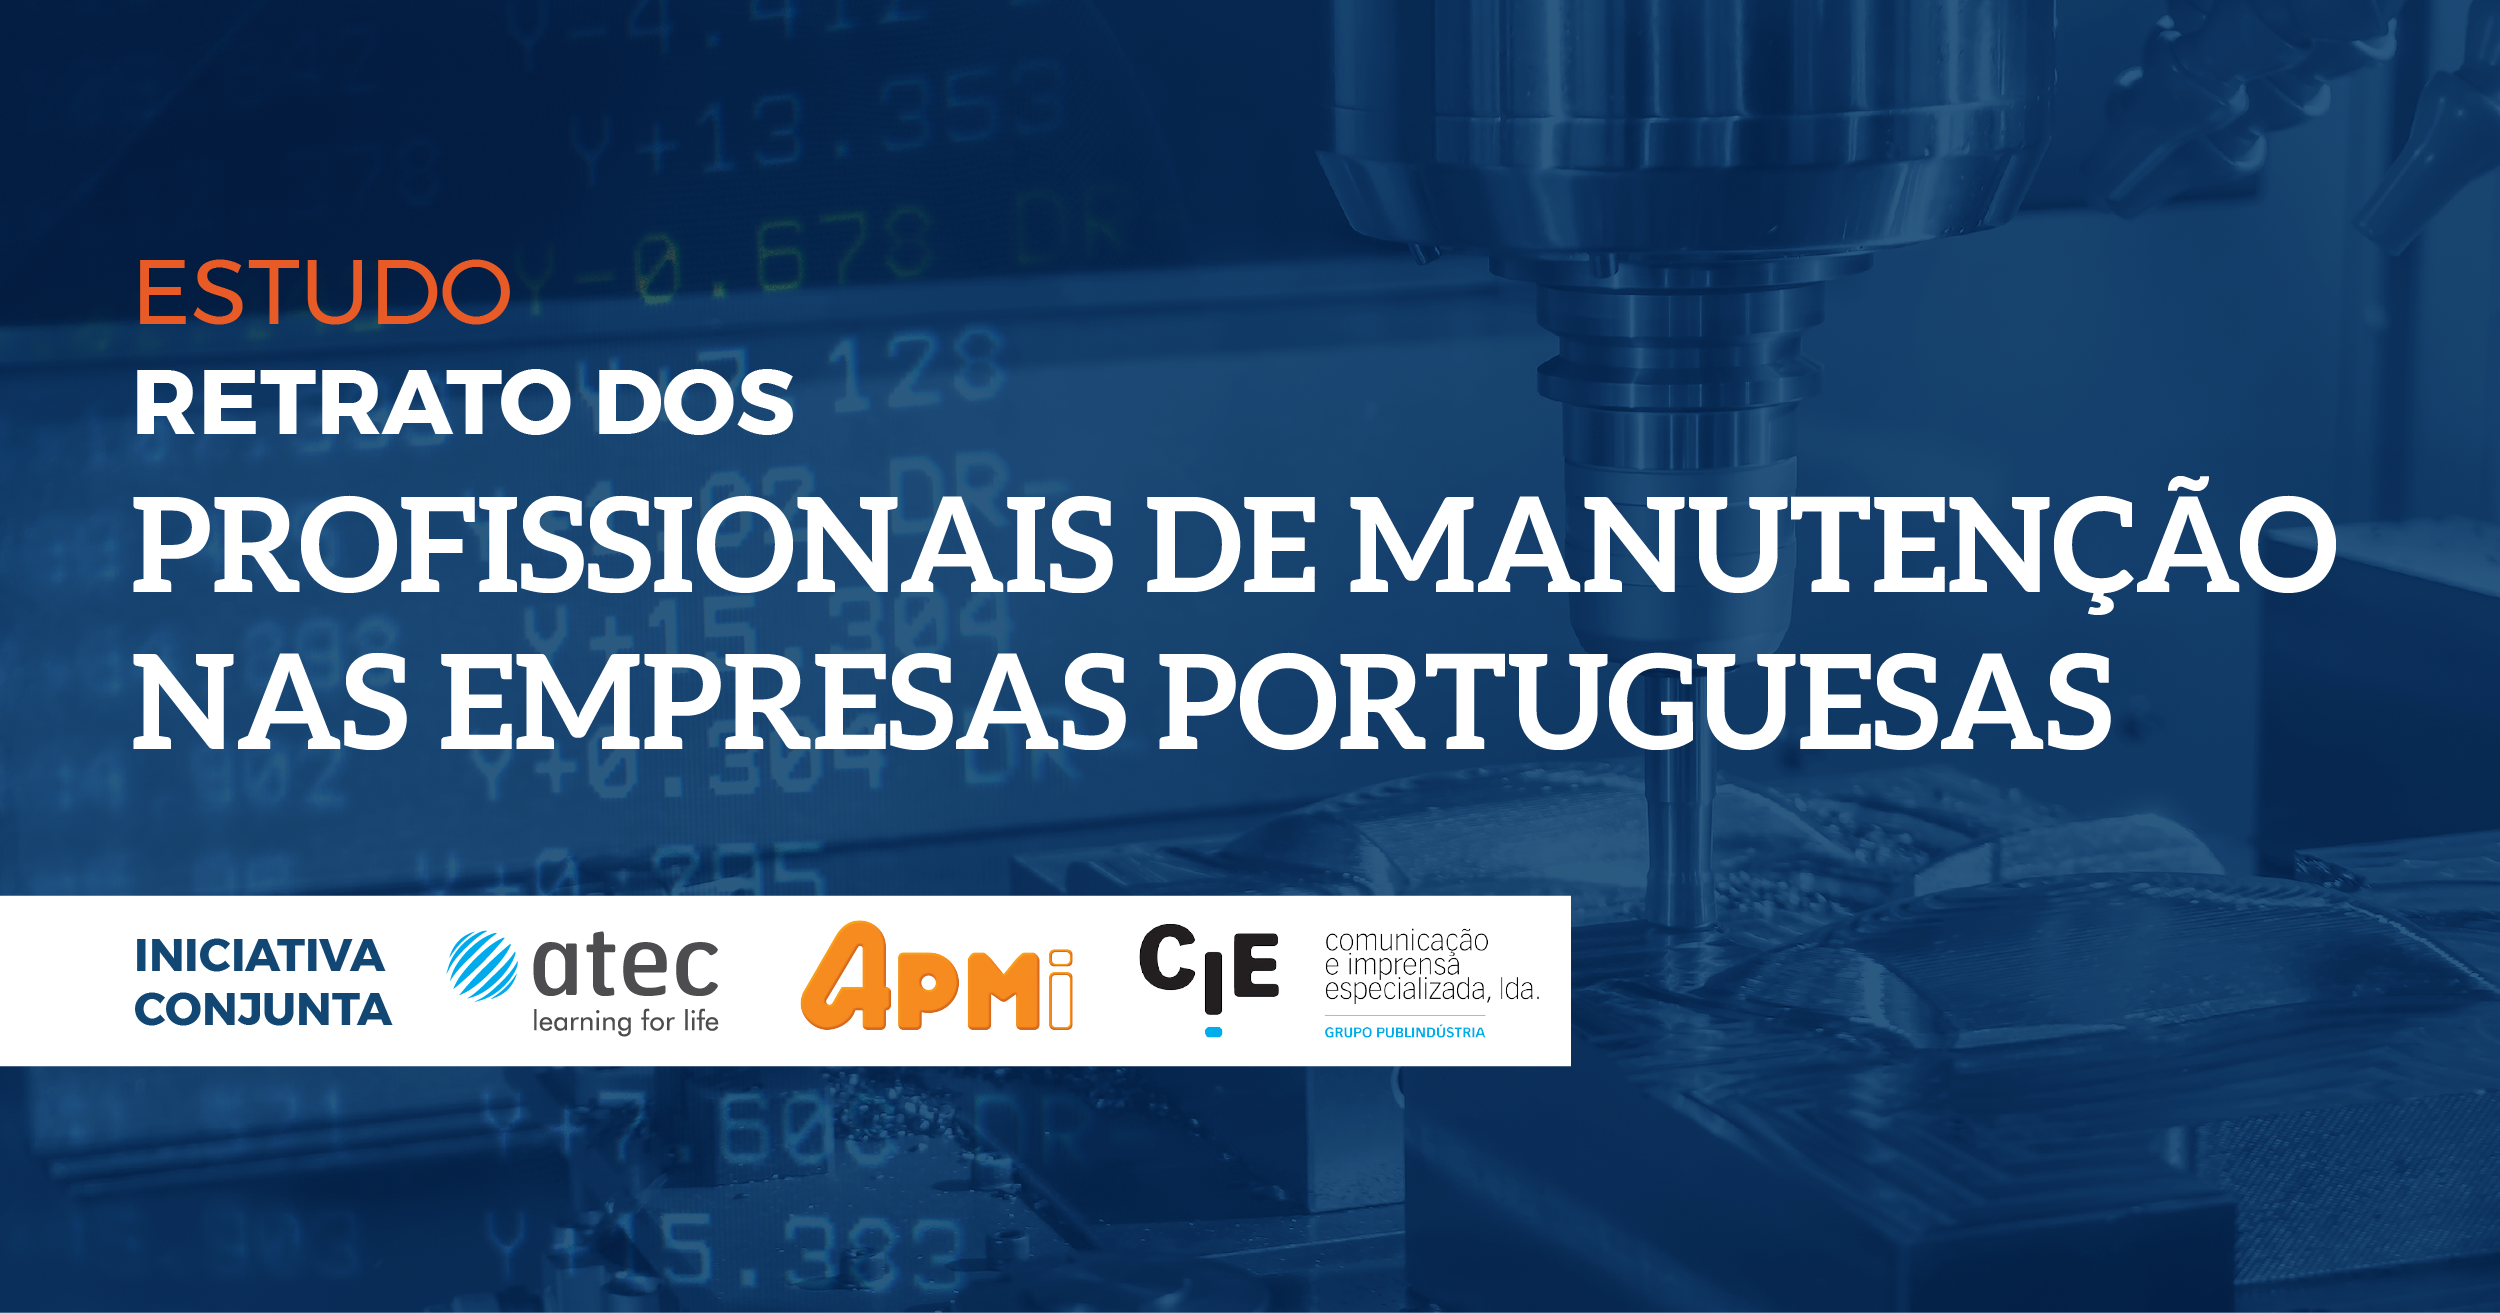 Proposta de Imagem Retrato dos Profissionais de Manutenção nas Empresas Portuguesas